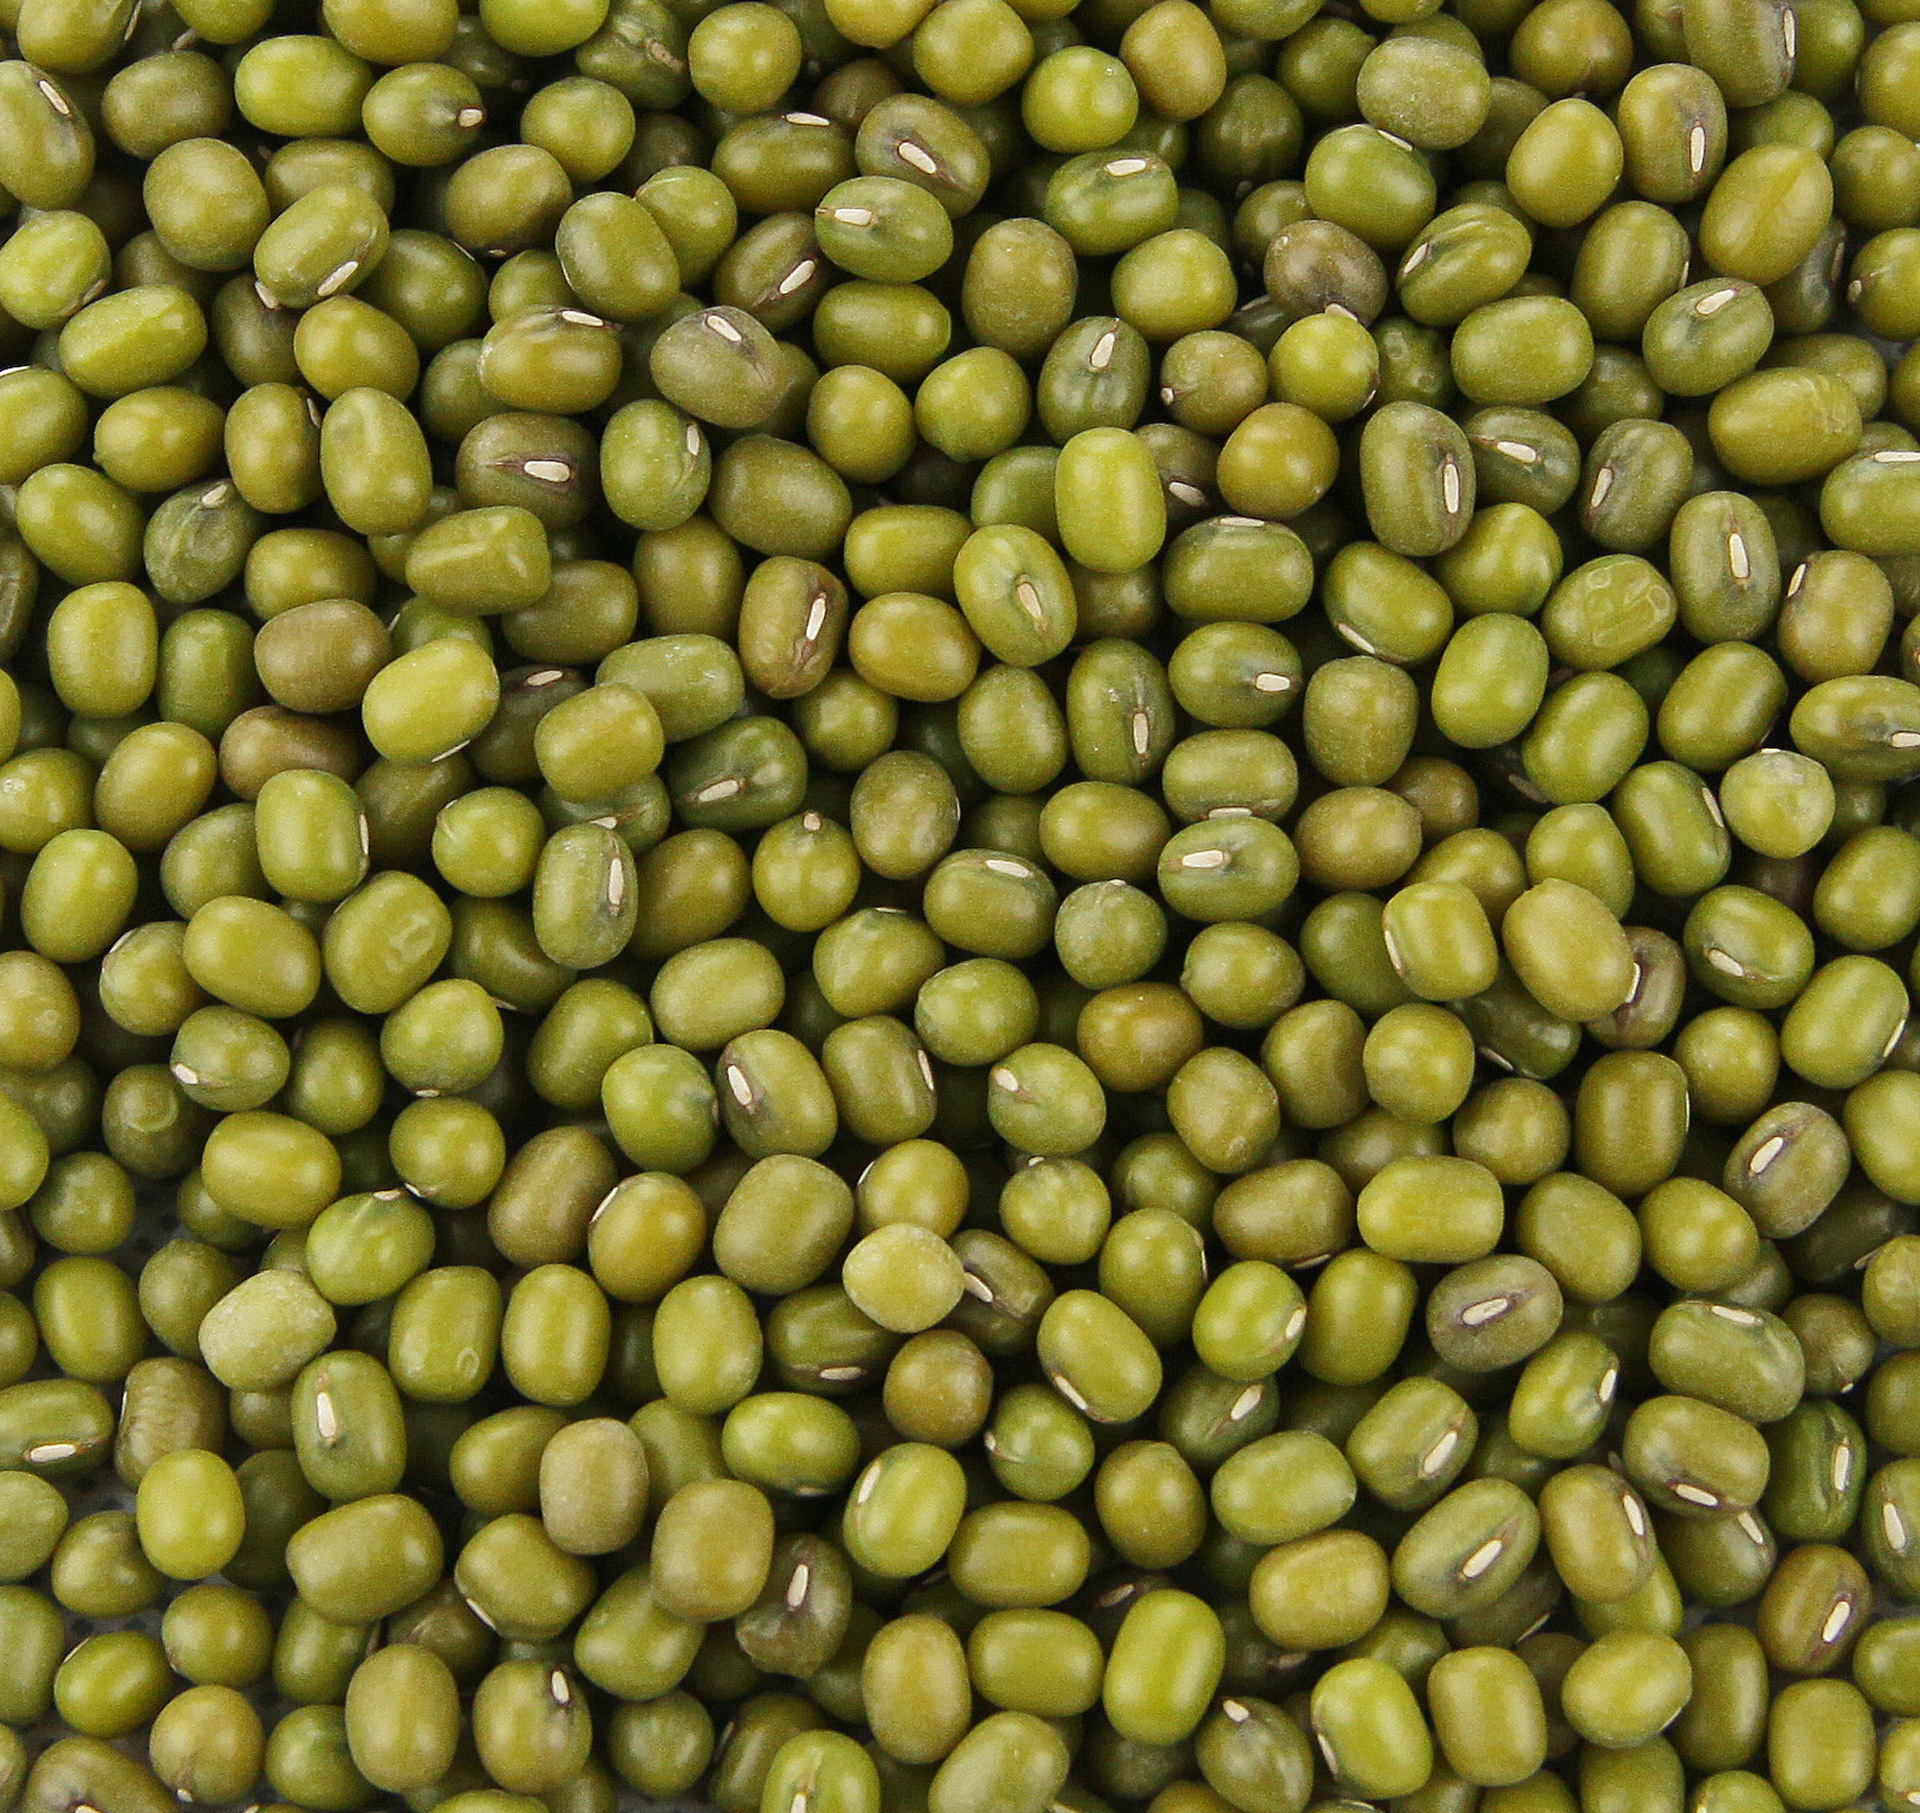 厂家直销 东北绿豆 优质食品绿豆 有机一等杂粮绿豆